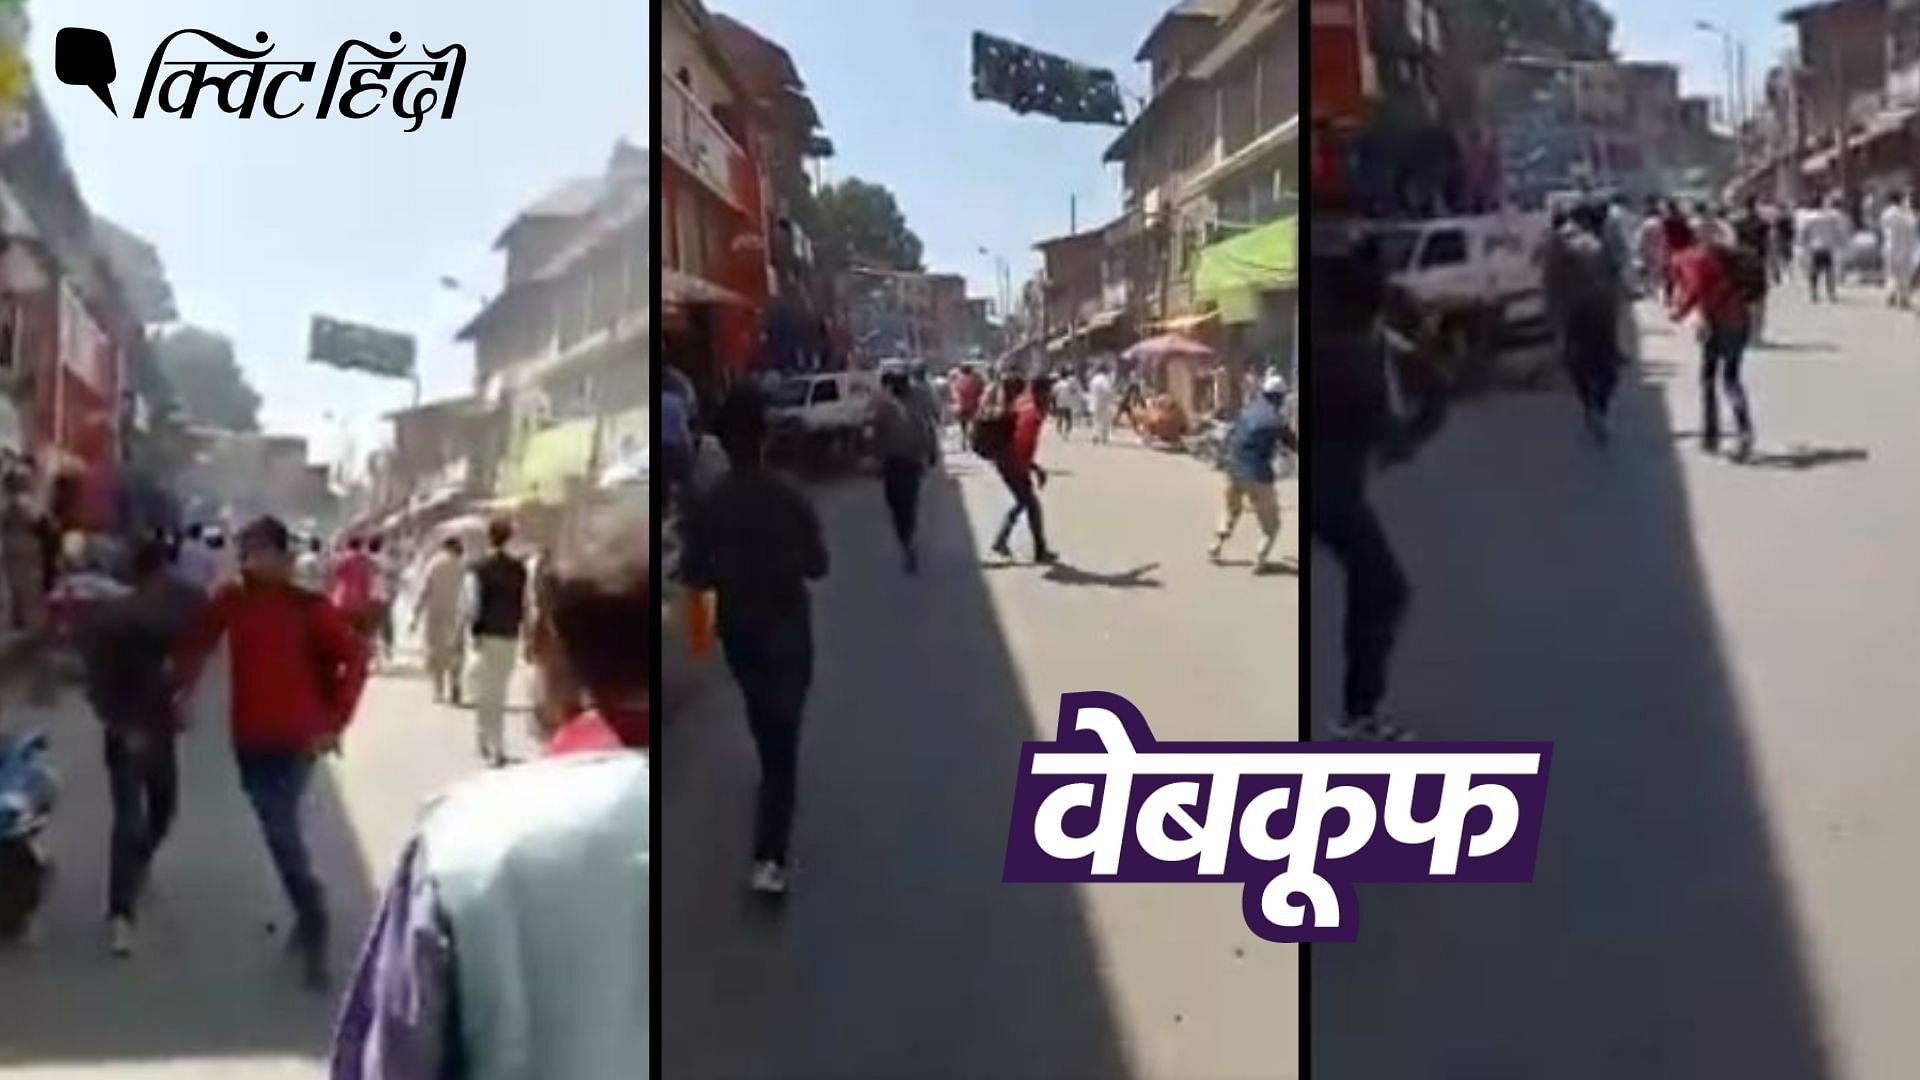 <div class="paragraphs"><p>ये वीडियो 2017 का है, जब कश्मीर के अनंतनाग में प्रदर्शनकारियों और पुलिस के बीच झड़प हो गई थी.</p></div>